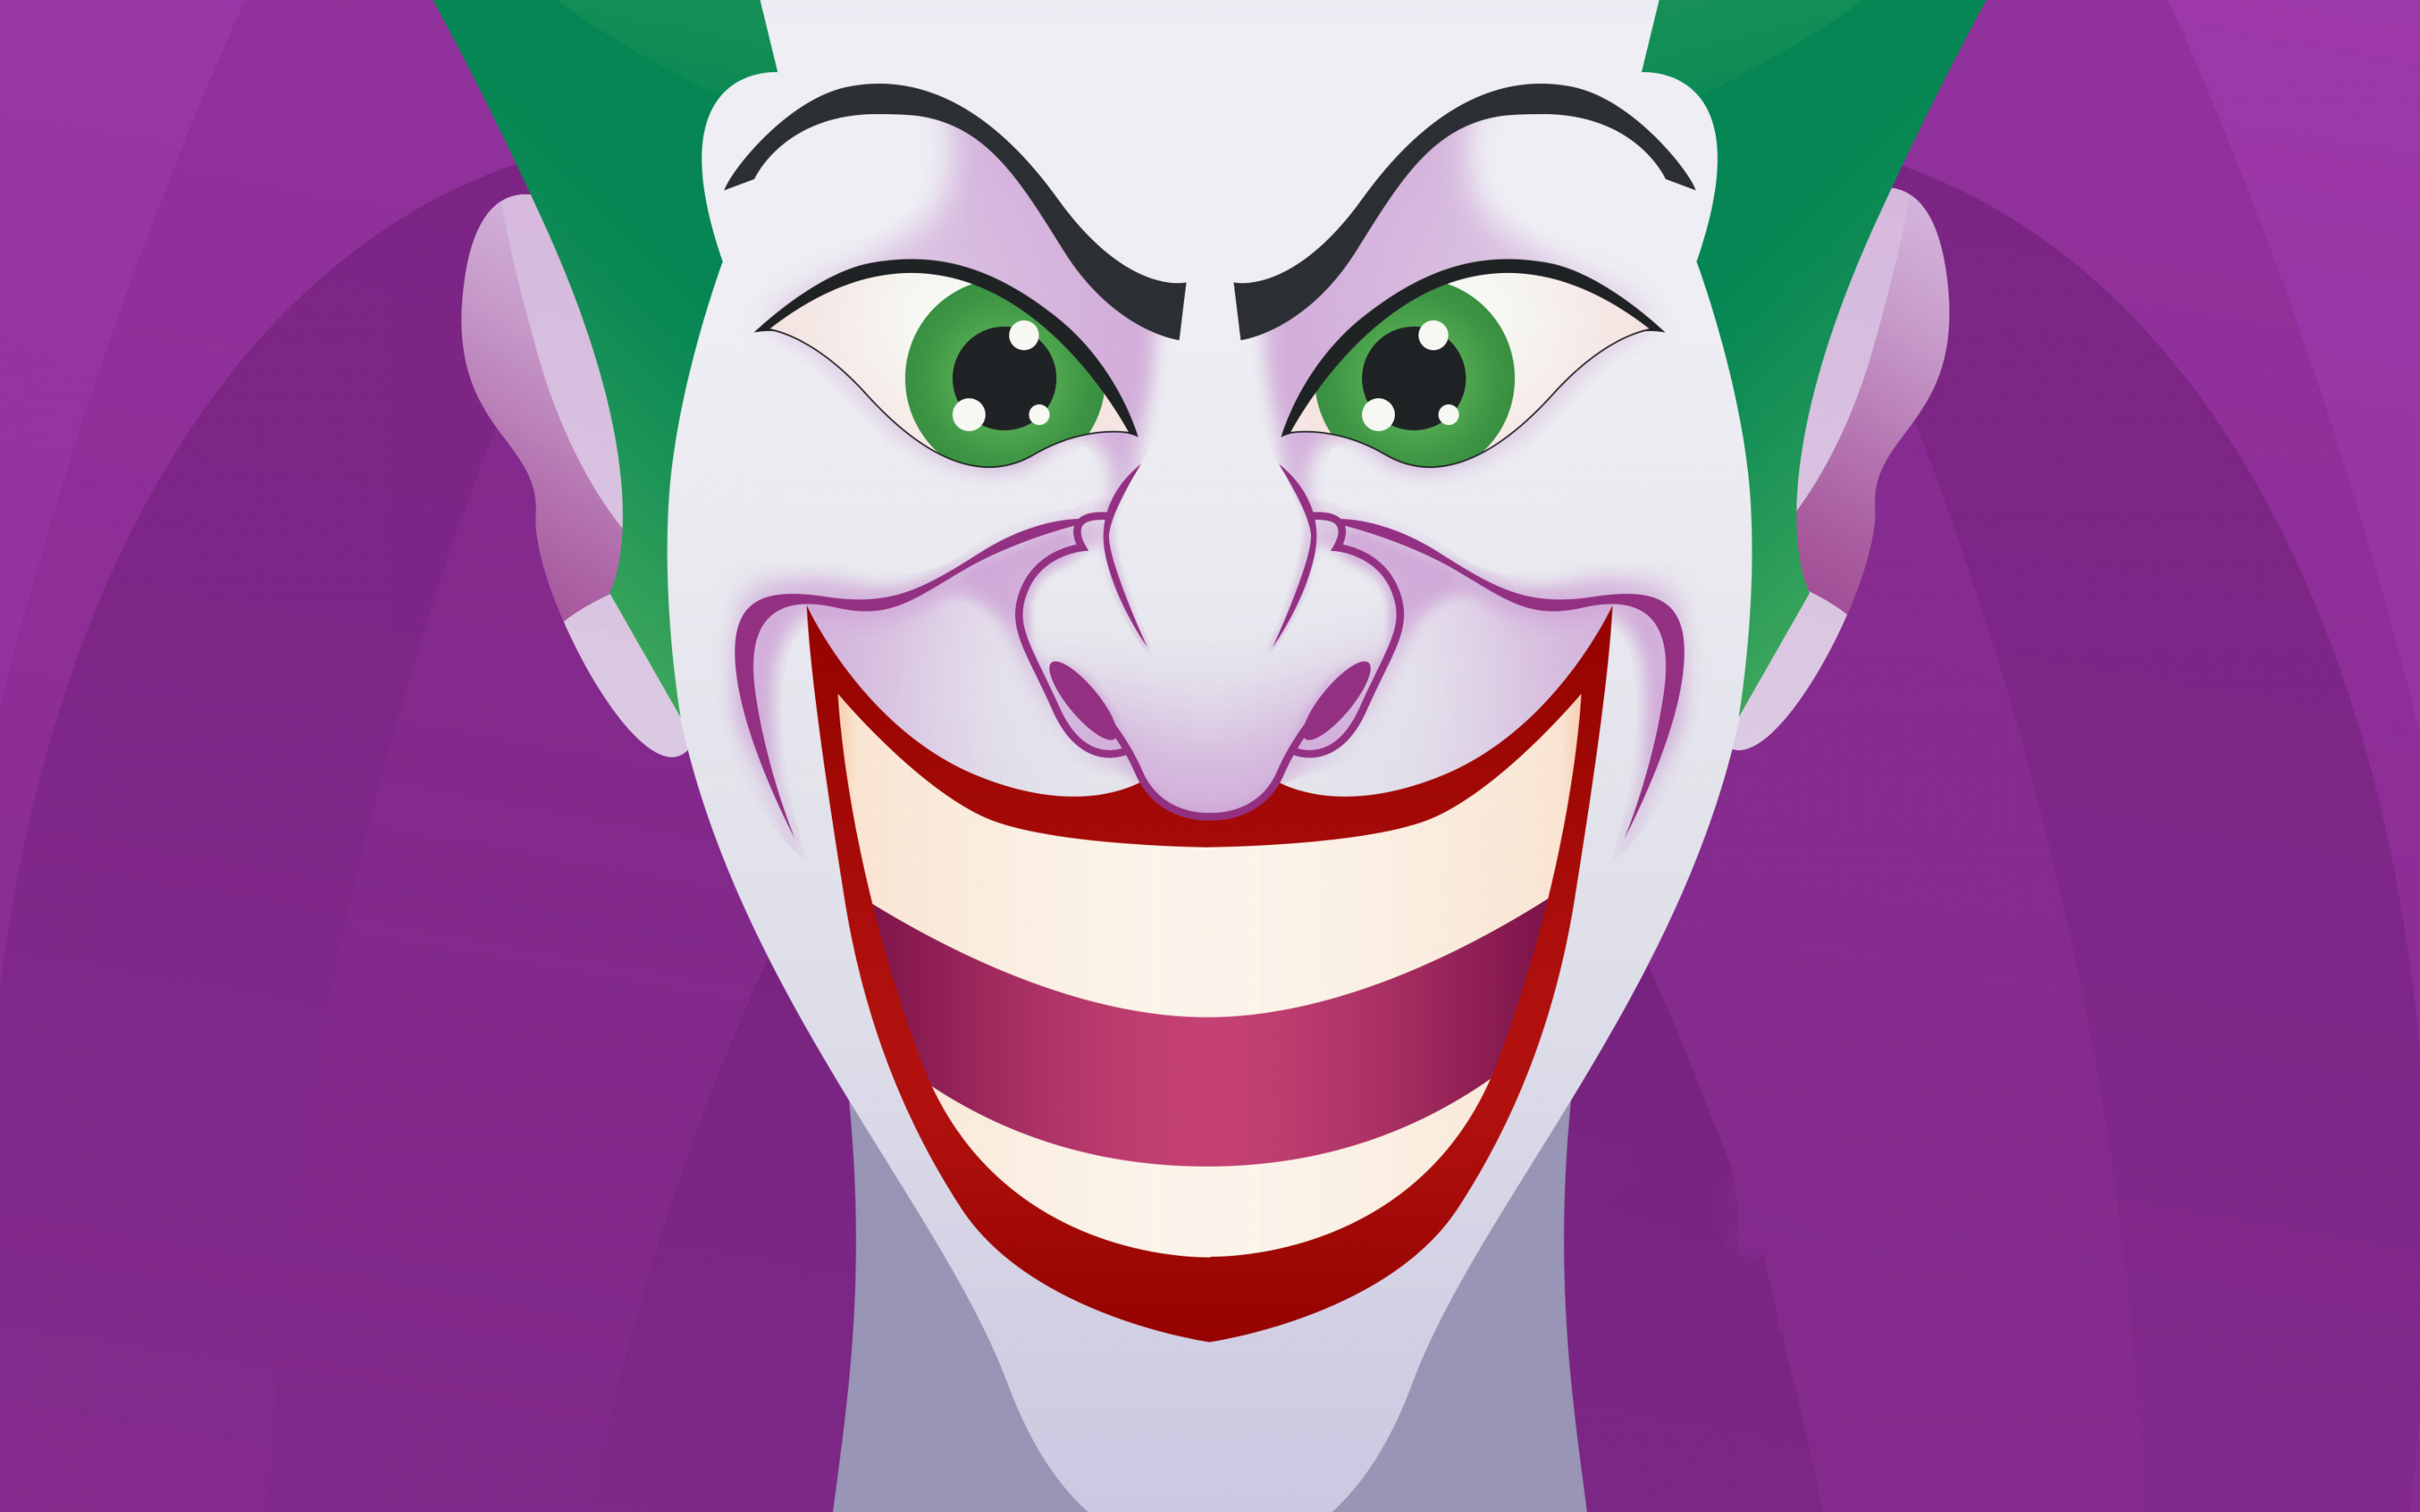 Joker, clown, smiling face, villain, dc comics, artwork, 2880x1800 wallpaper